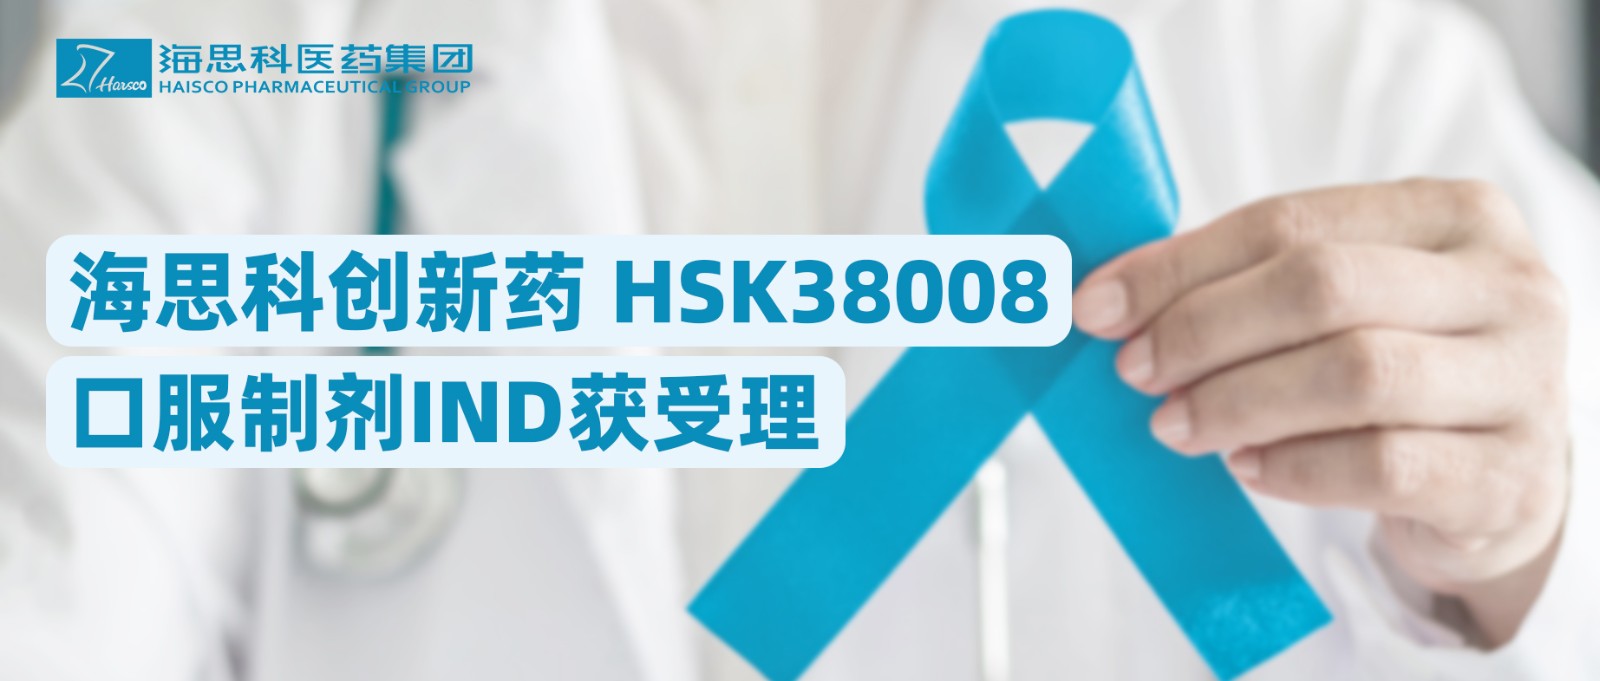 新葡的京集团8814创新药HSK38008口服制剂IND获受理